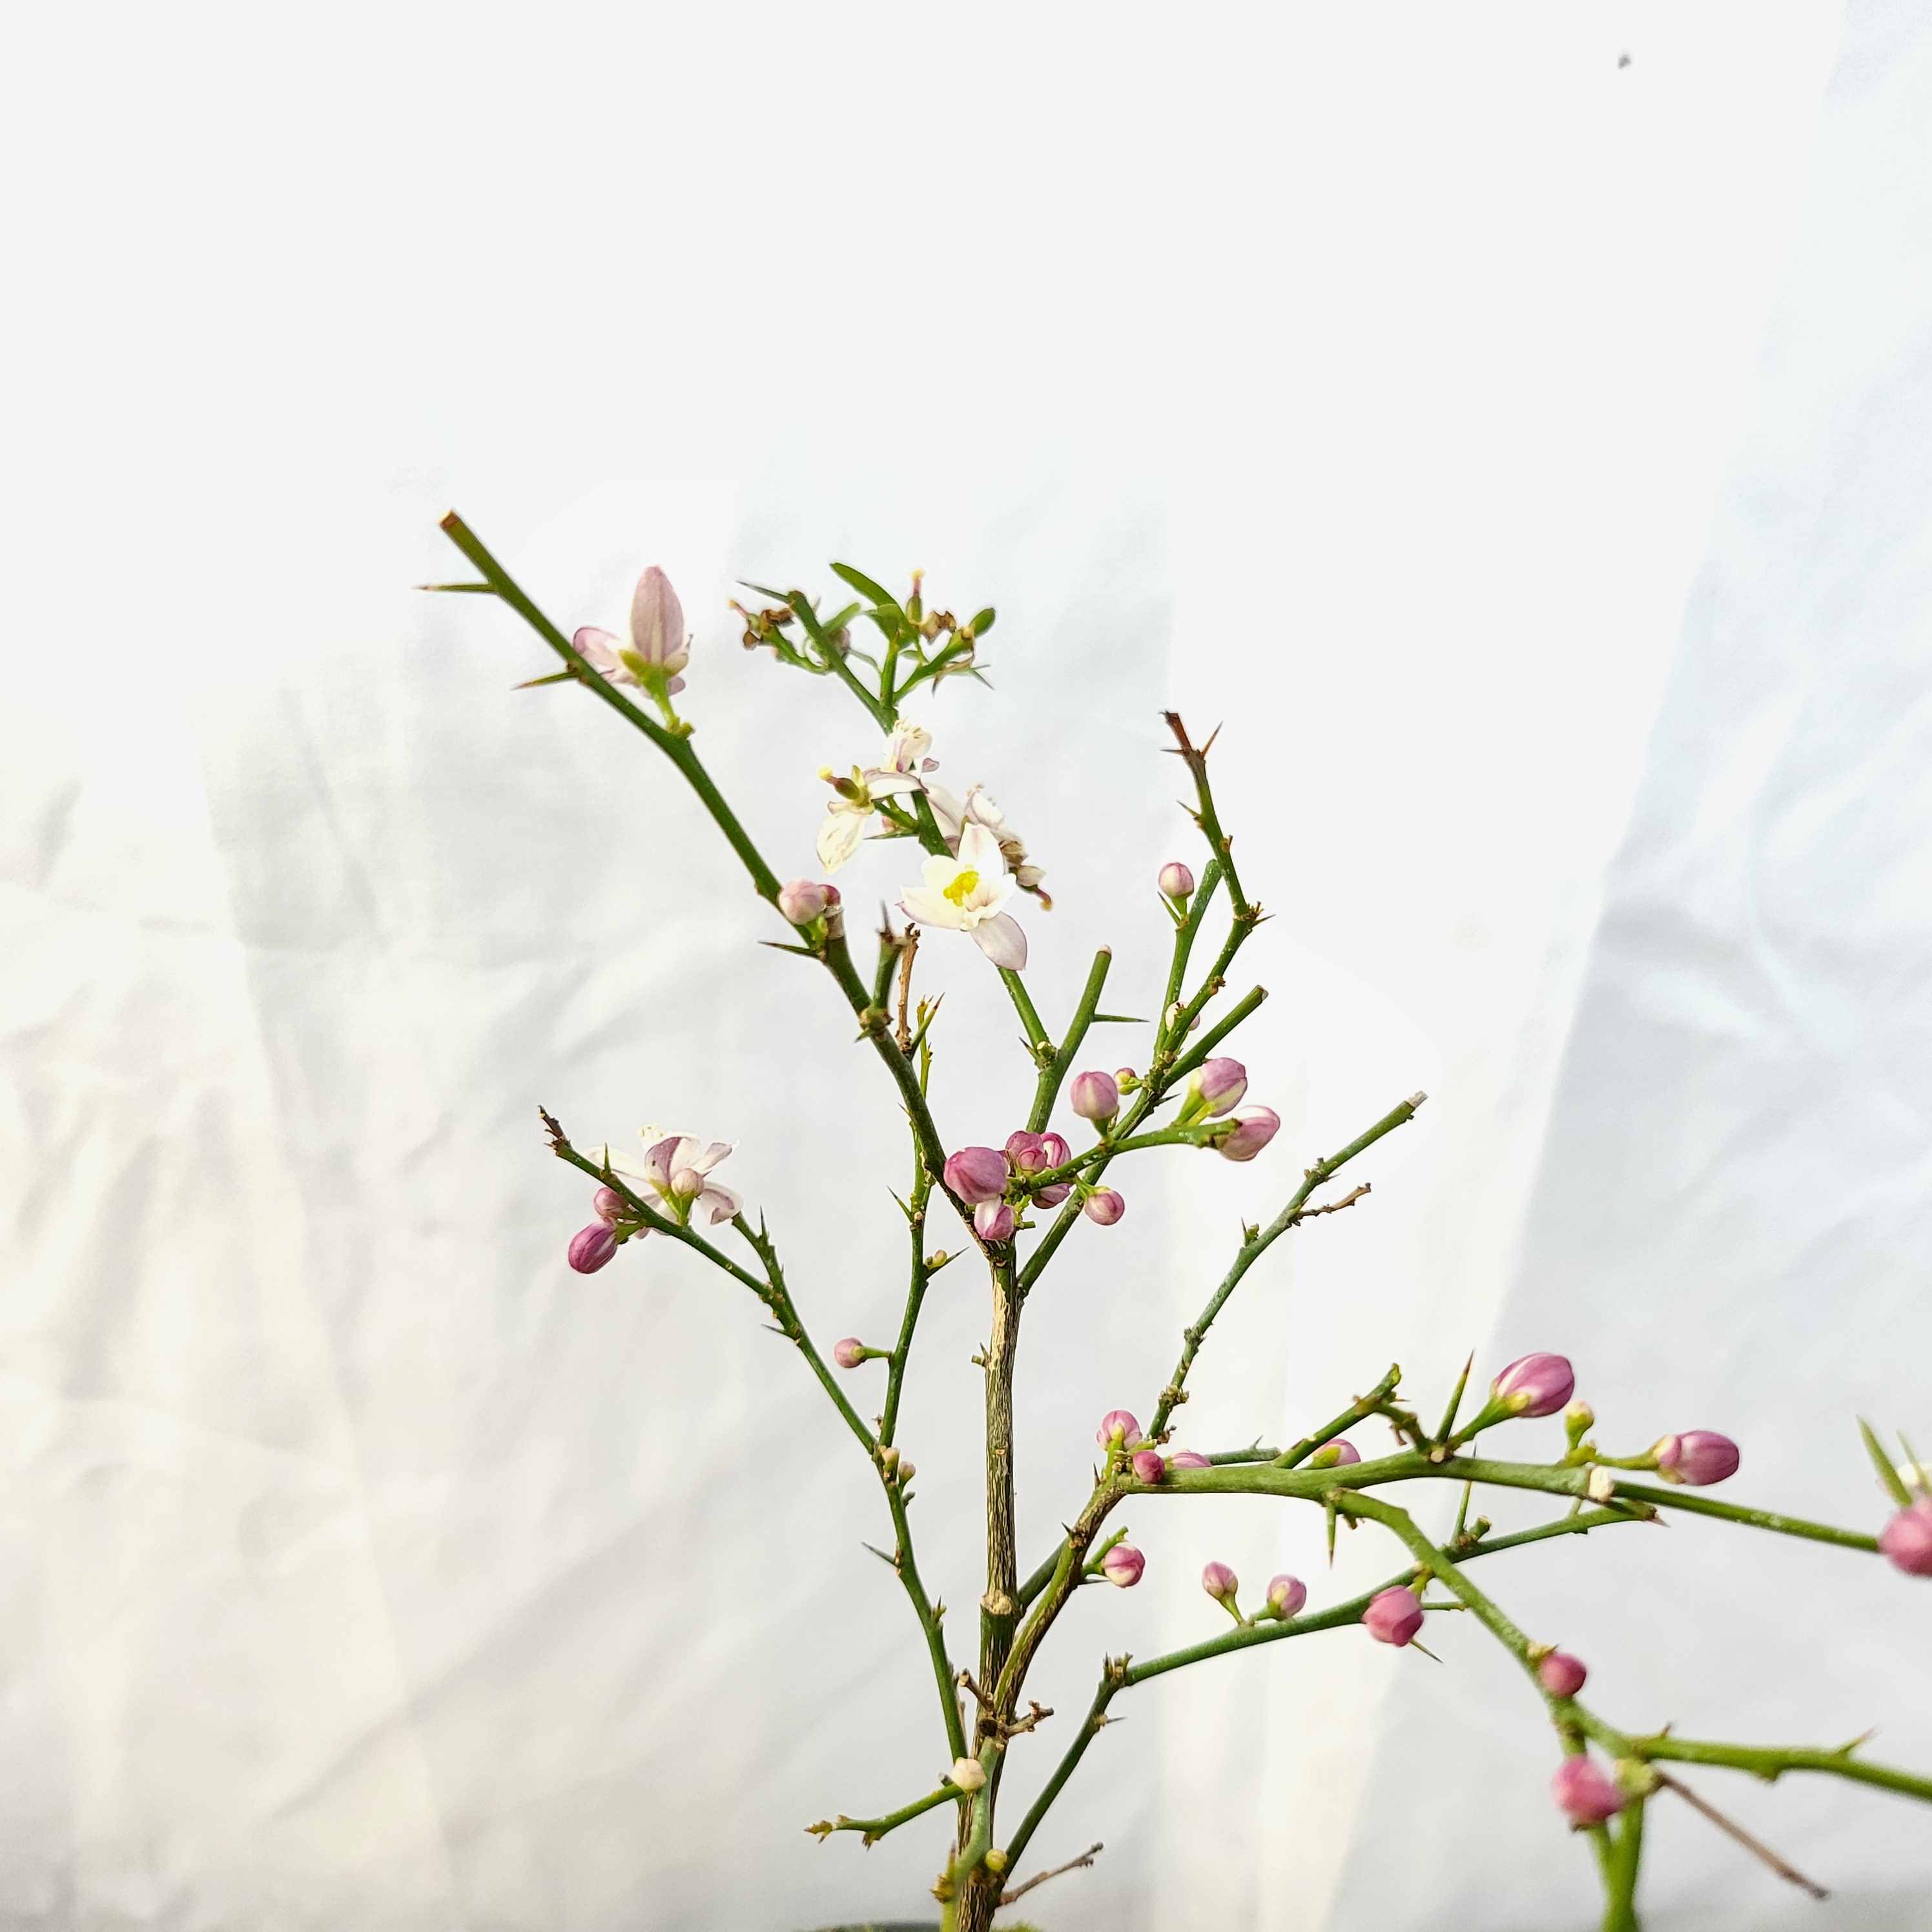 블러드 라임 나무 도자기 열매 묘목 야생화 분재 축하 선물 화분 